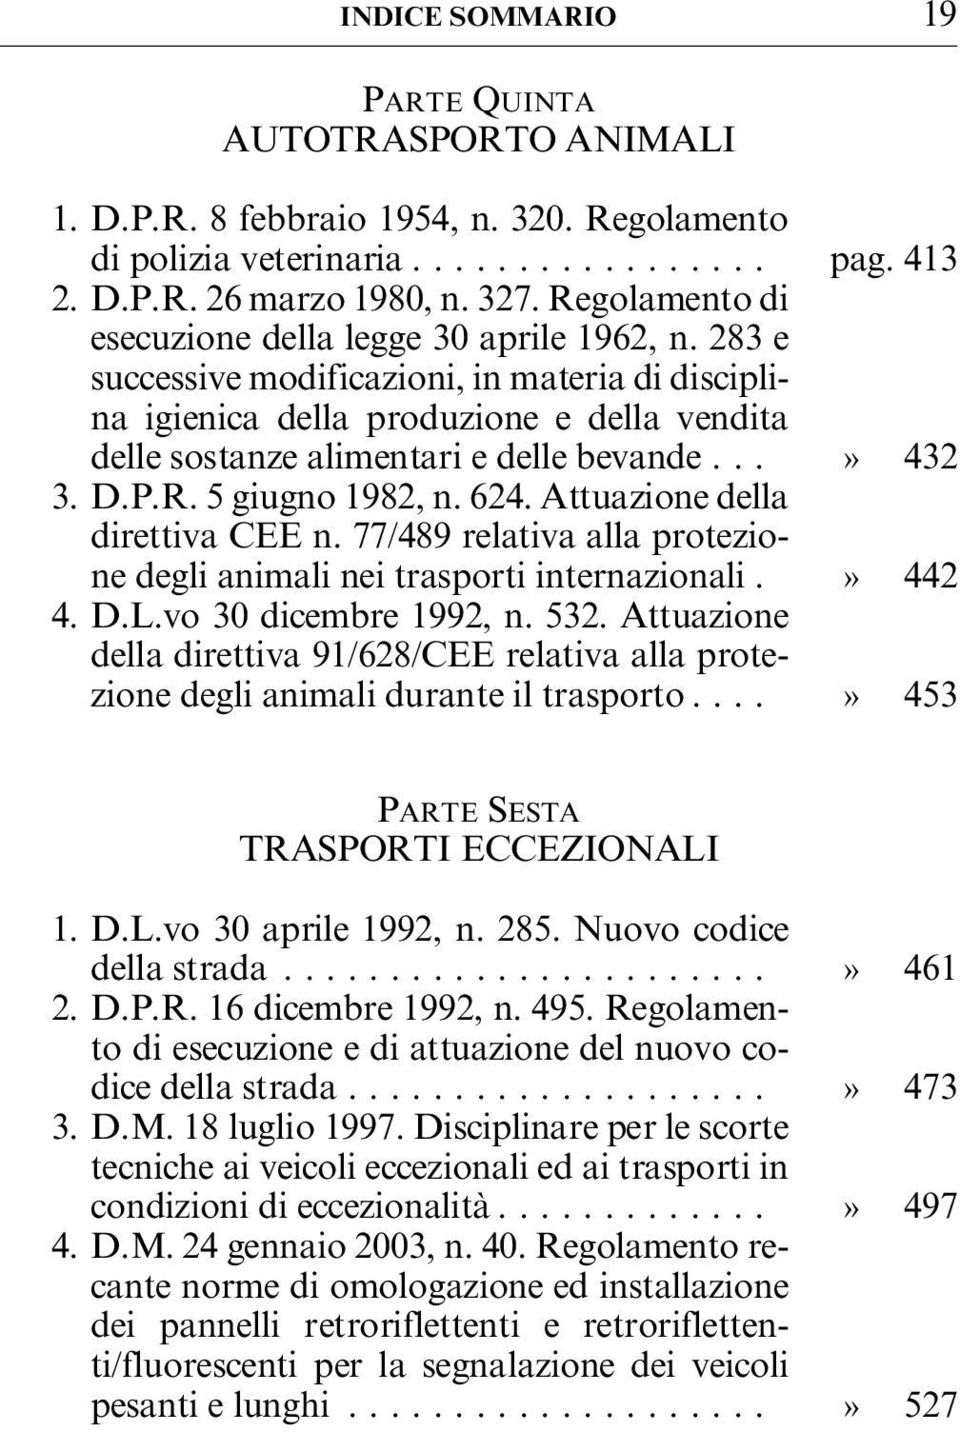 ..» 432 3. D.P.R. 5 giugno 1982, n. 624. Attuazione della direttiva CEE n. 77/489 relativa alla protezione degli animali nei trasporti internazionali.» 442 4. D.L.vo 30 dicembre 1992, n. 532.